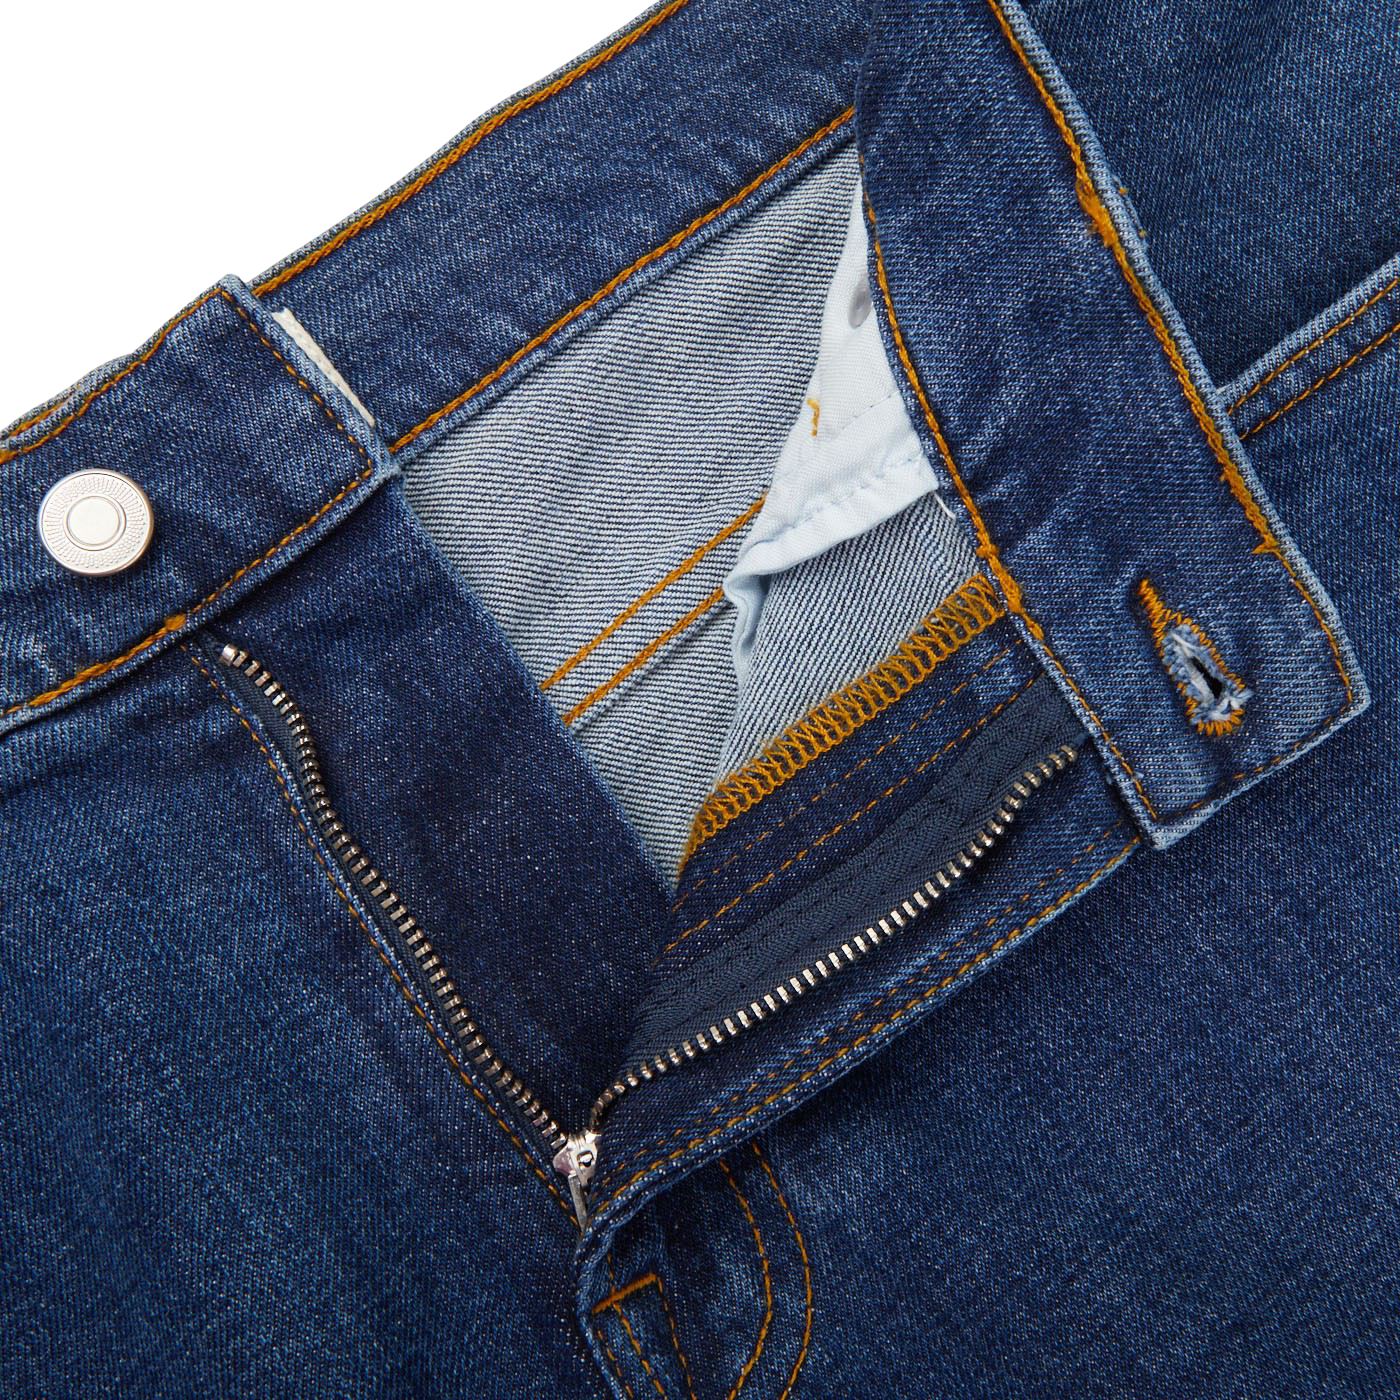 Jeanerica Blue Vintage 95 Cotton SM001 Jeans Zipper